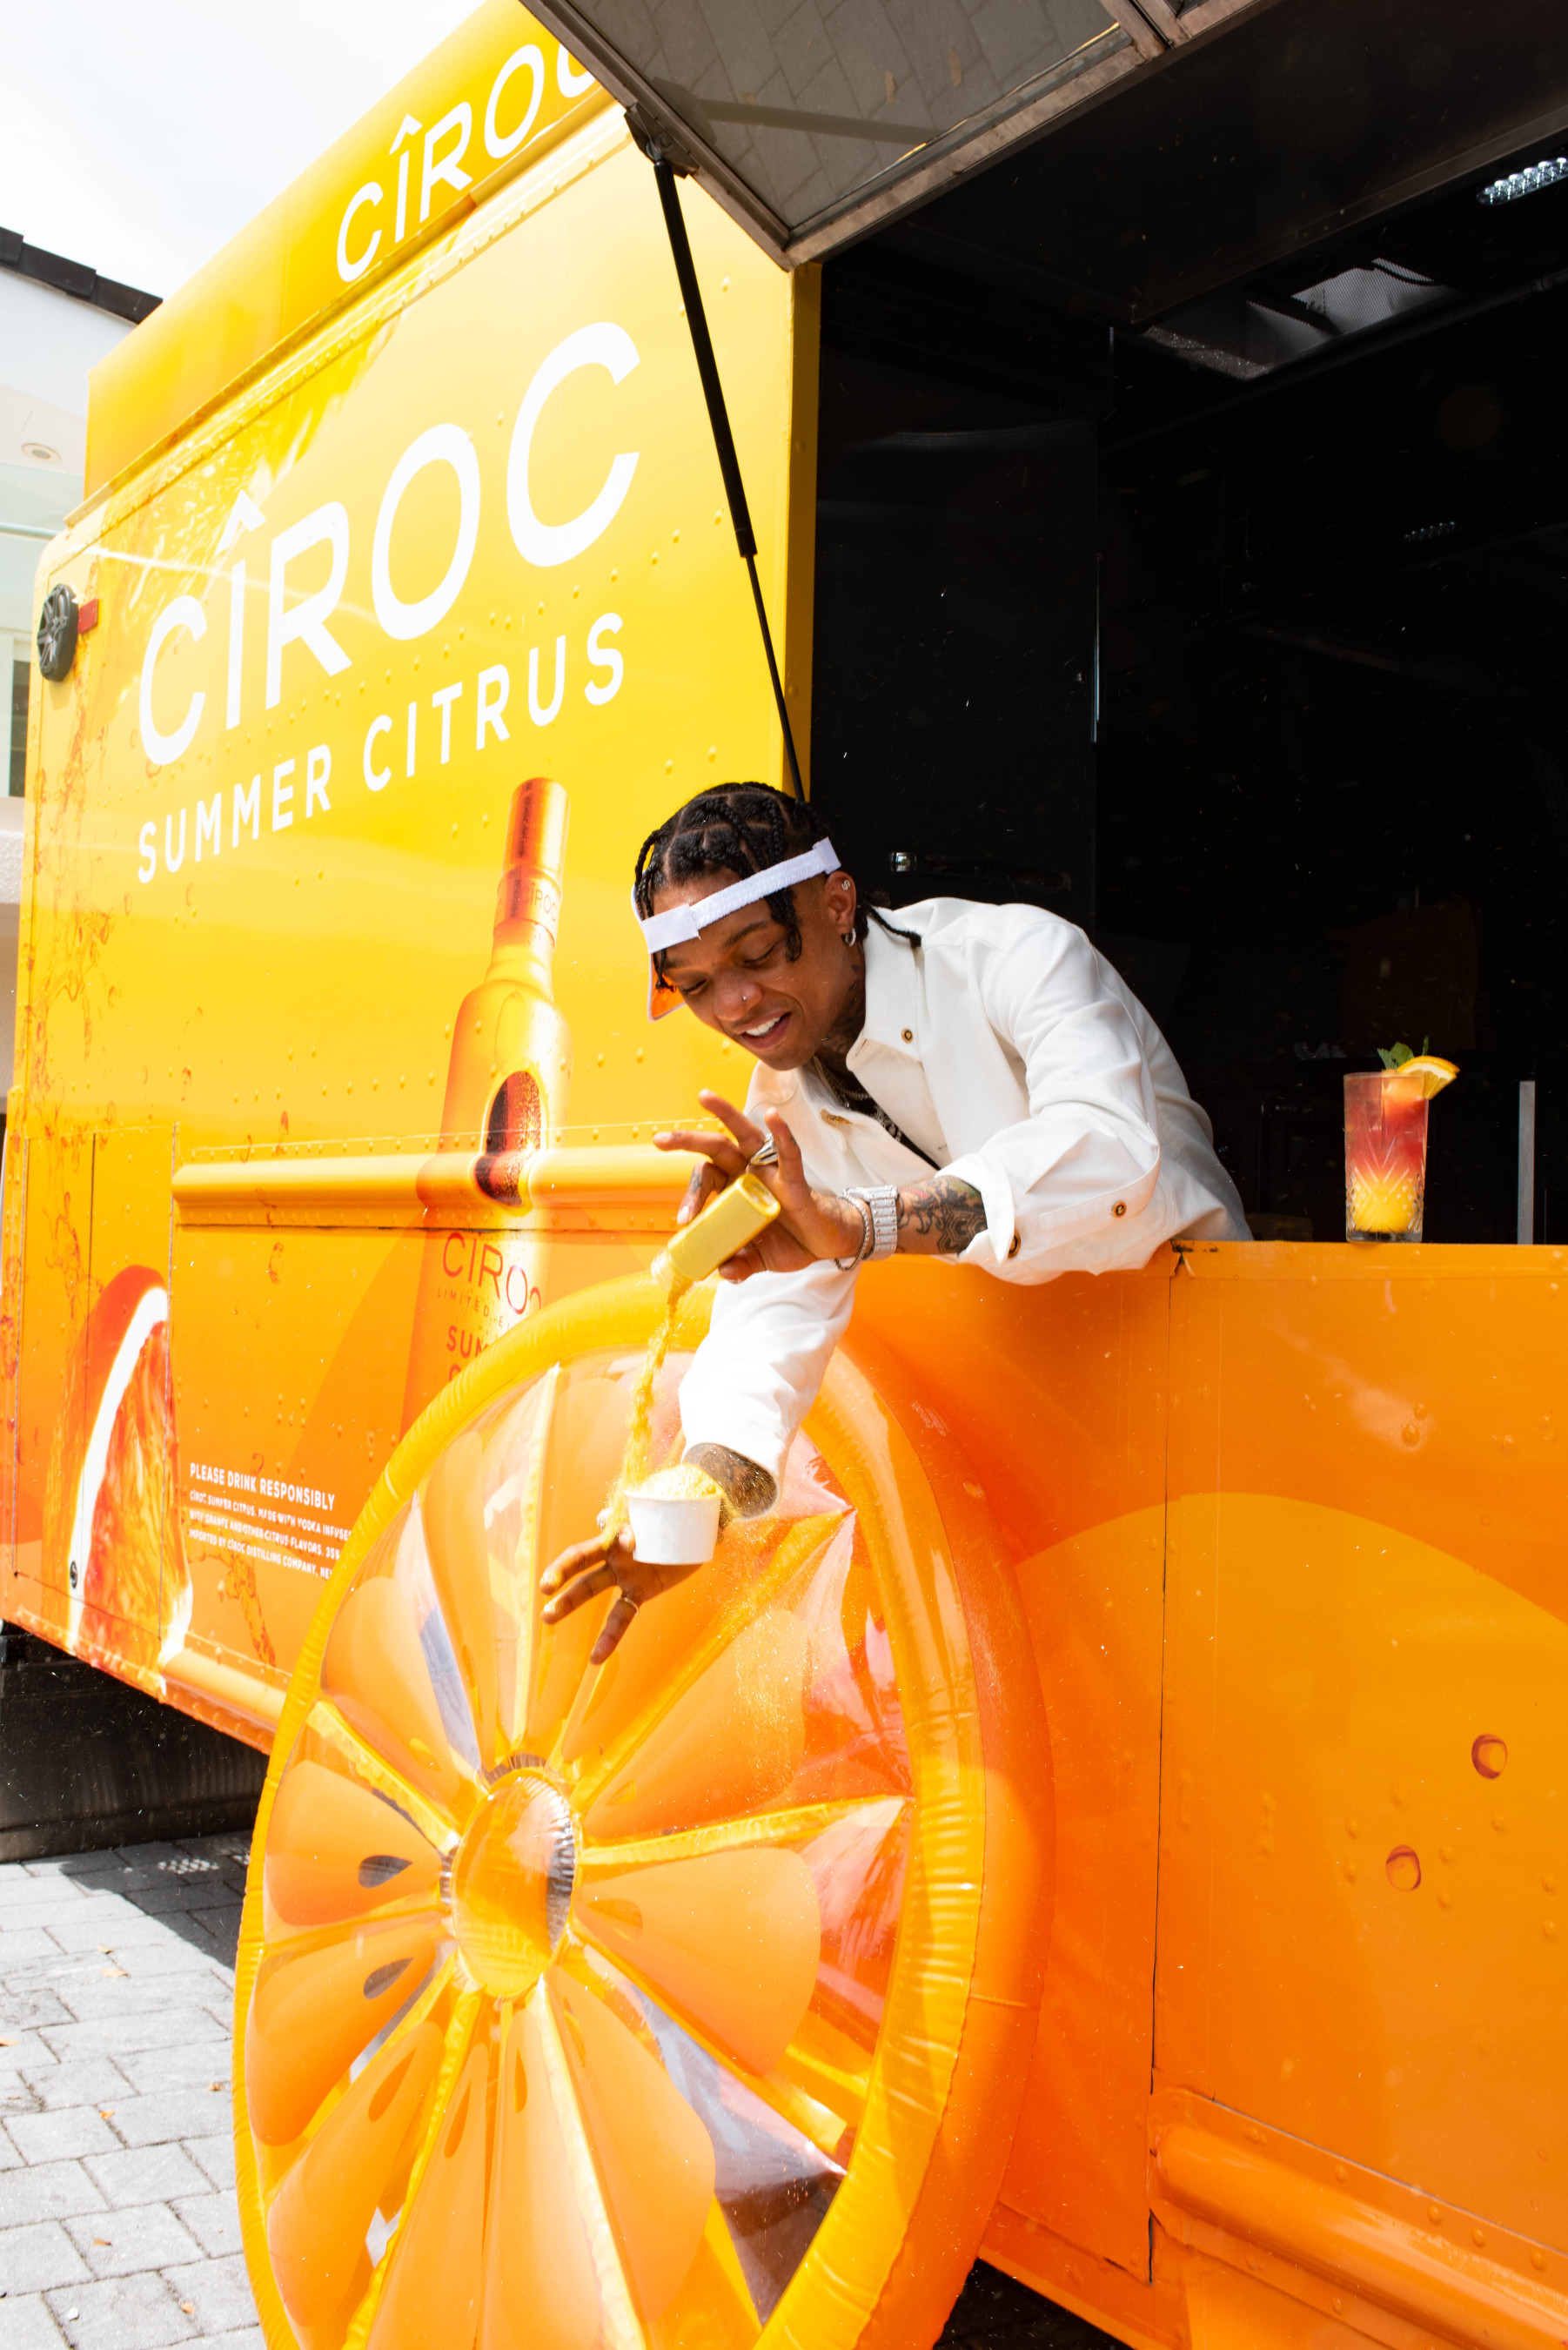 Inspirado en los sabores de CÎROC Summer Citrus, nuevo "Citrus Drip" con Swae Chispitas